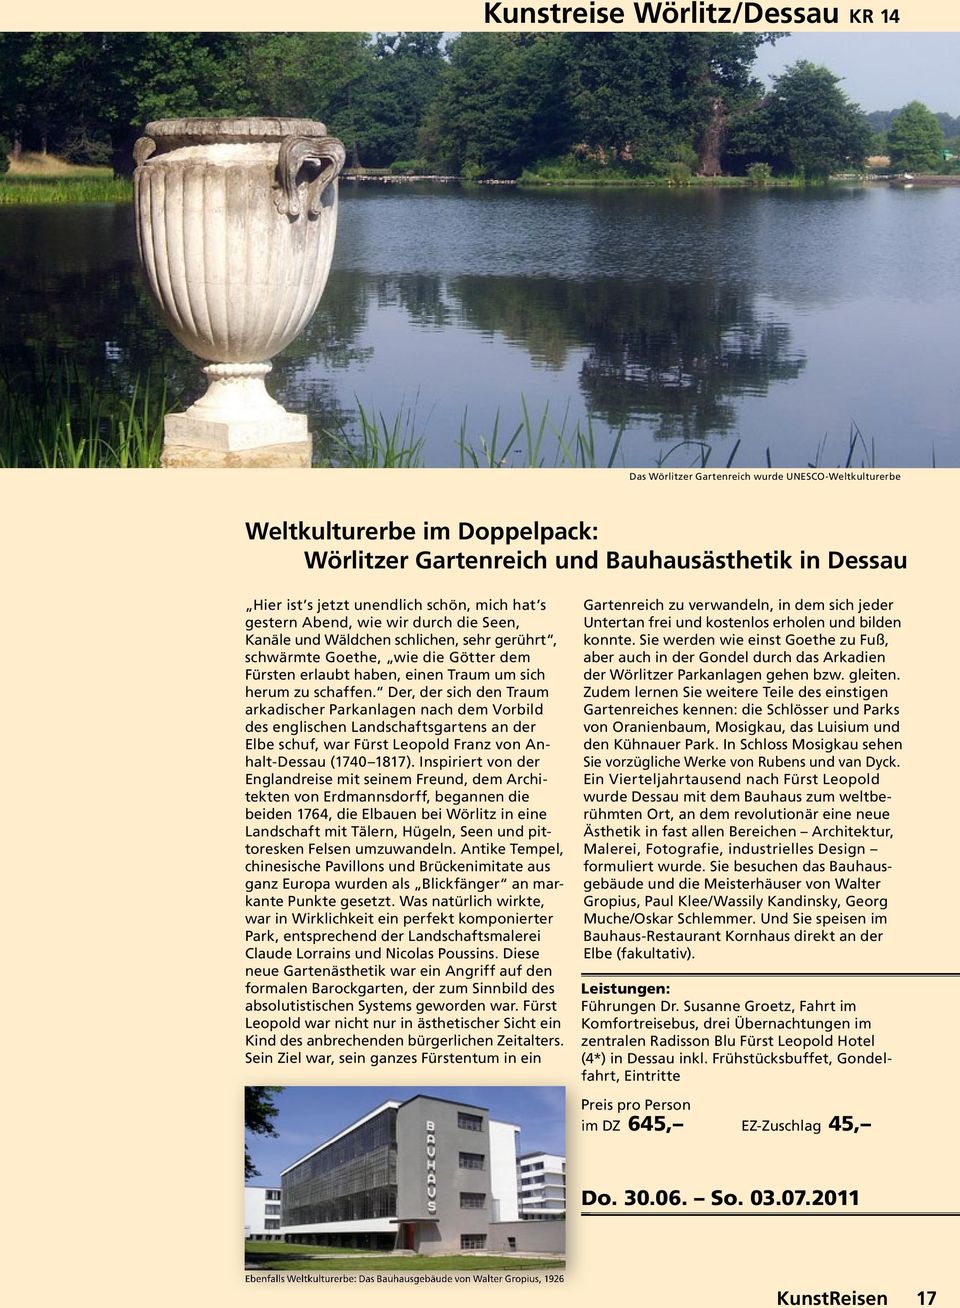 Der, der sich den Traum arkadischer Parkanlagen nach dem Vorbild des englischen Landschaftsgartens an der Elbe schuf, war Fürst Leopold Franz von Anhalt-Dessau (1740 1817).